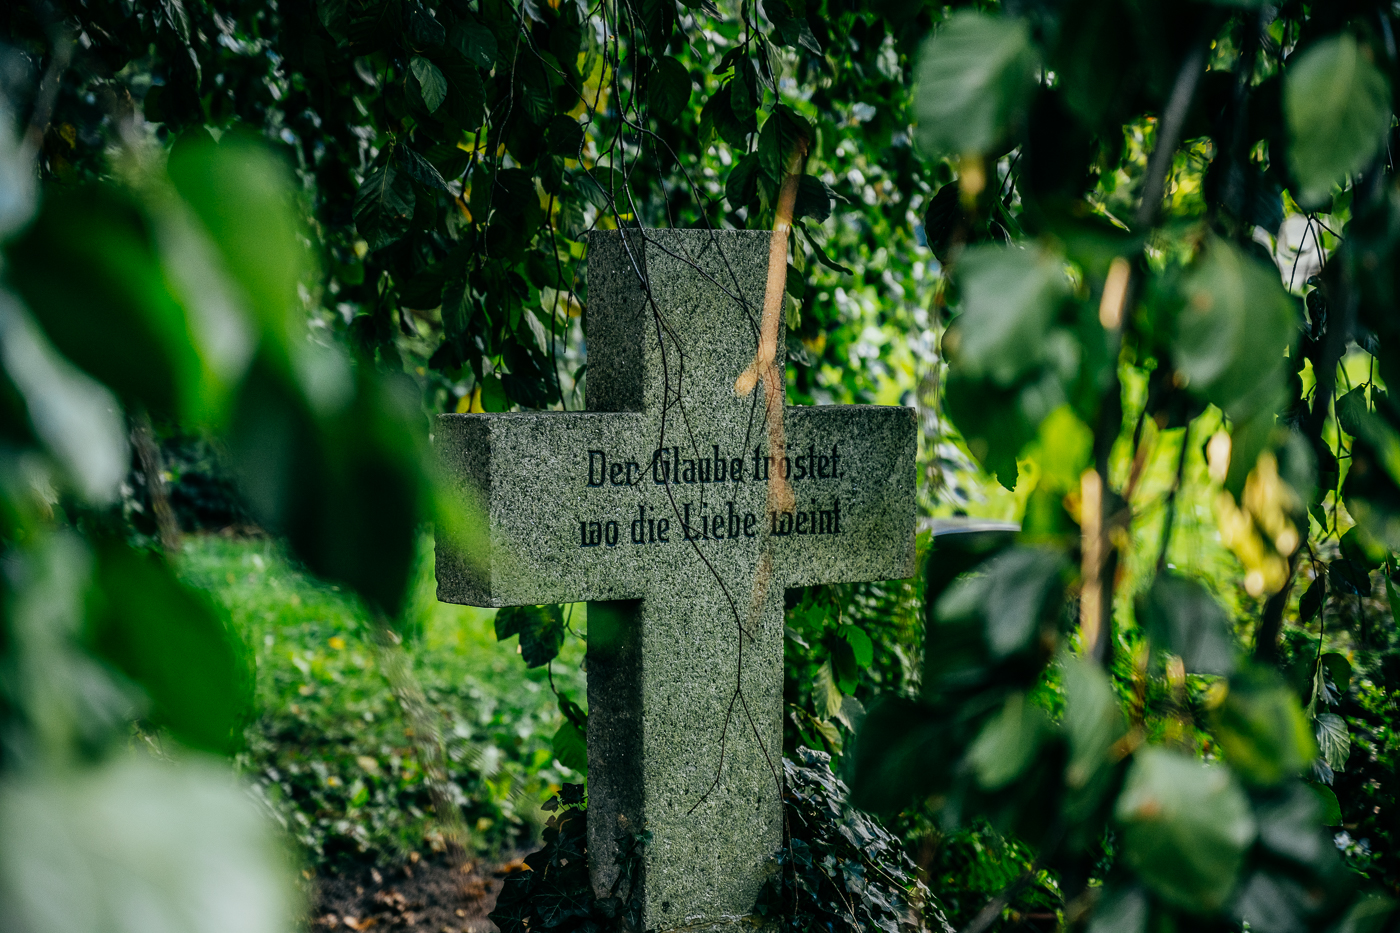 Der Glaube tröstet wo die Liebe weint - Inschrift Grabstein